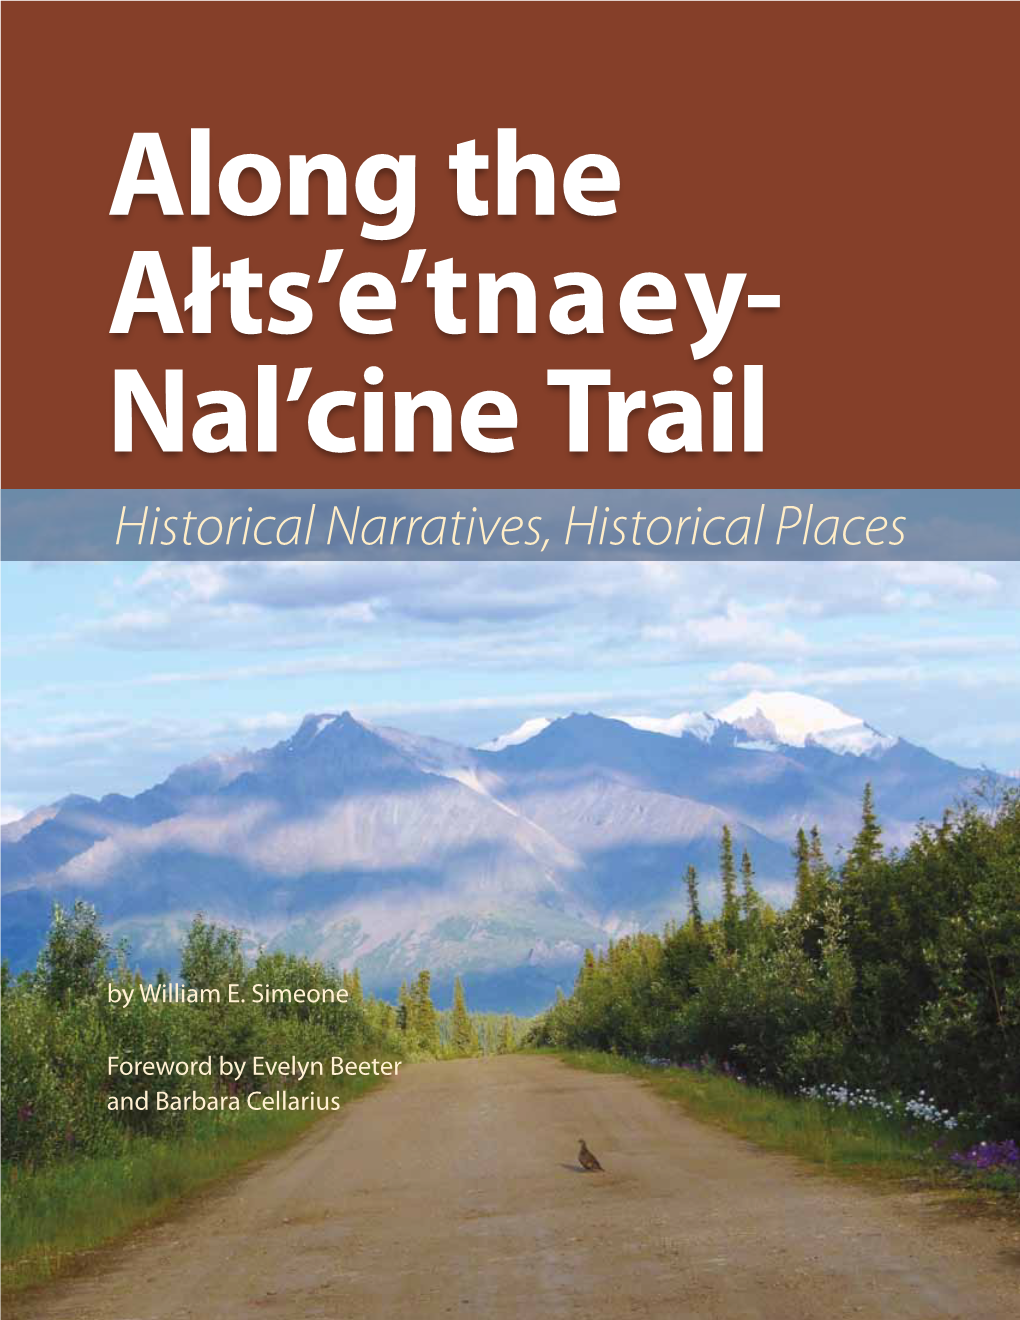 Along the Altsetnaey Nalcine Trail